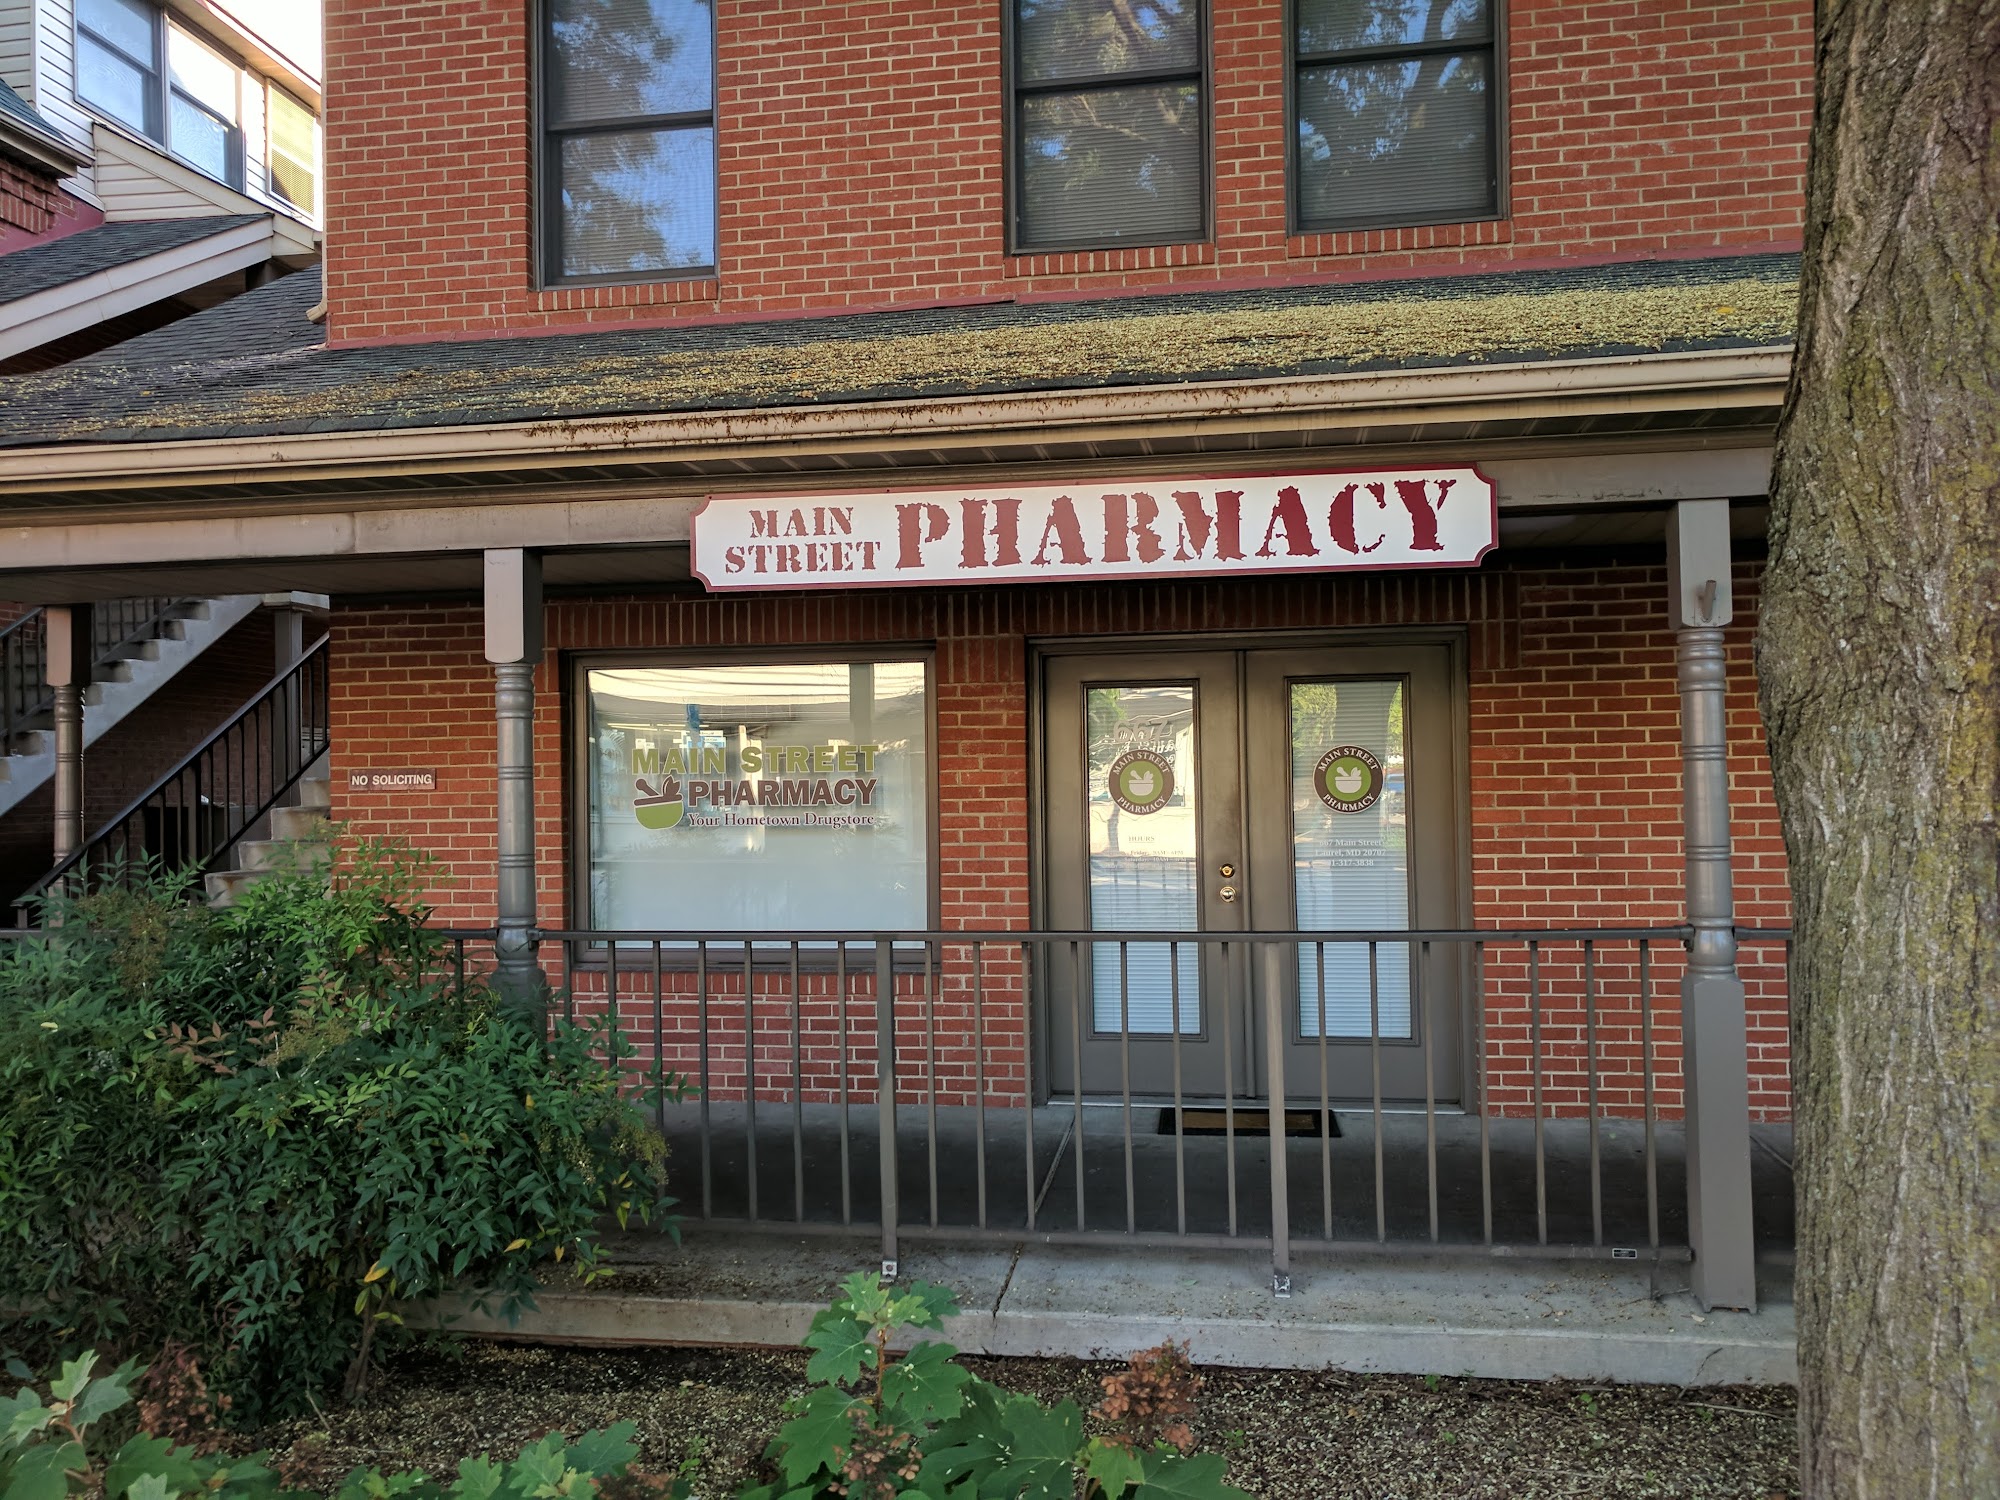 Main Street Pharmacy